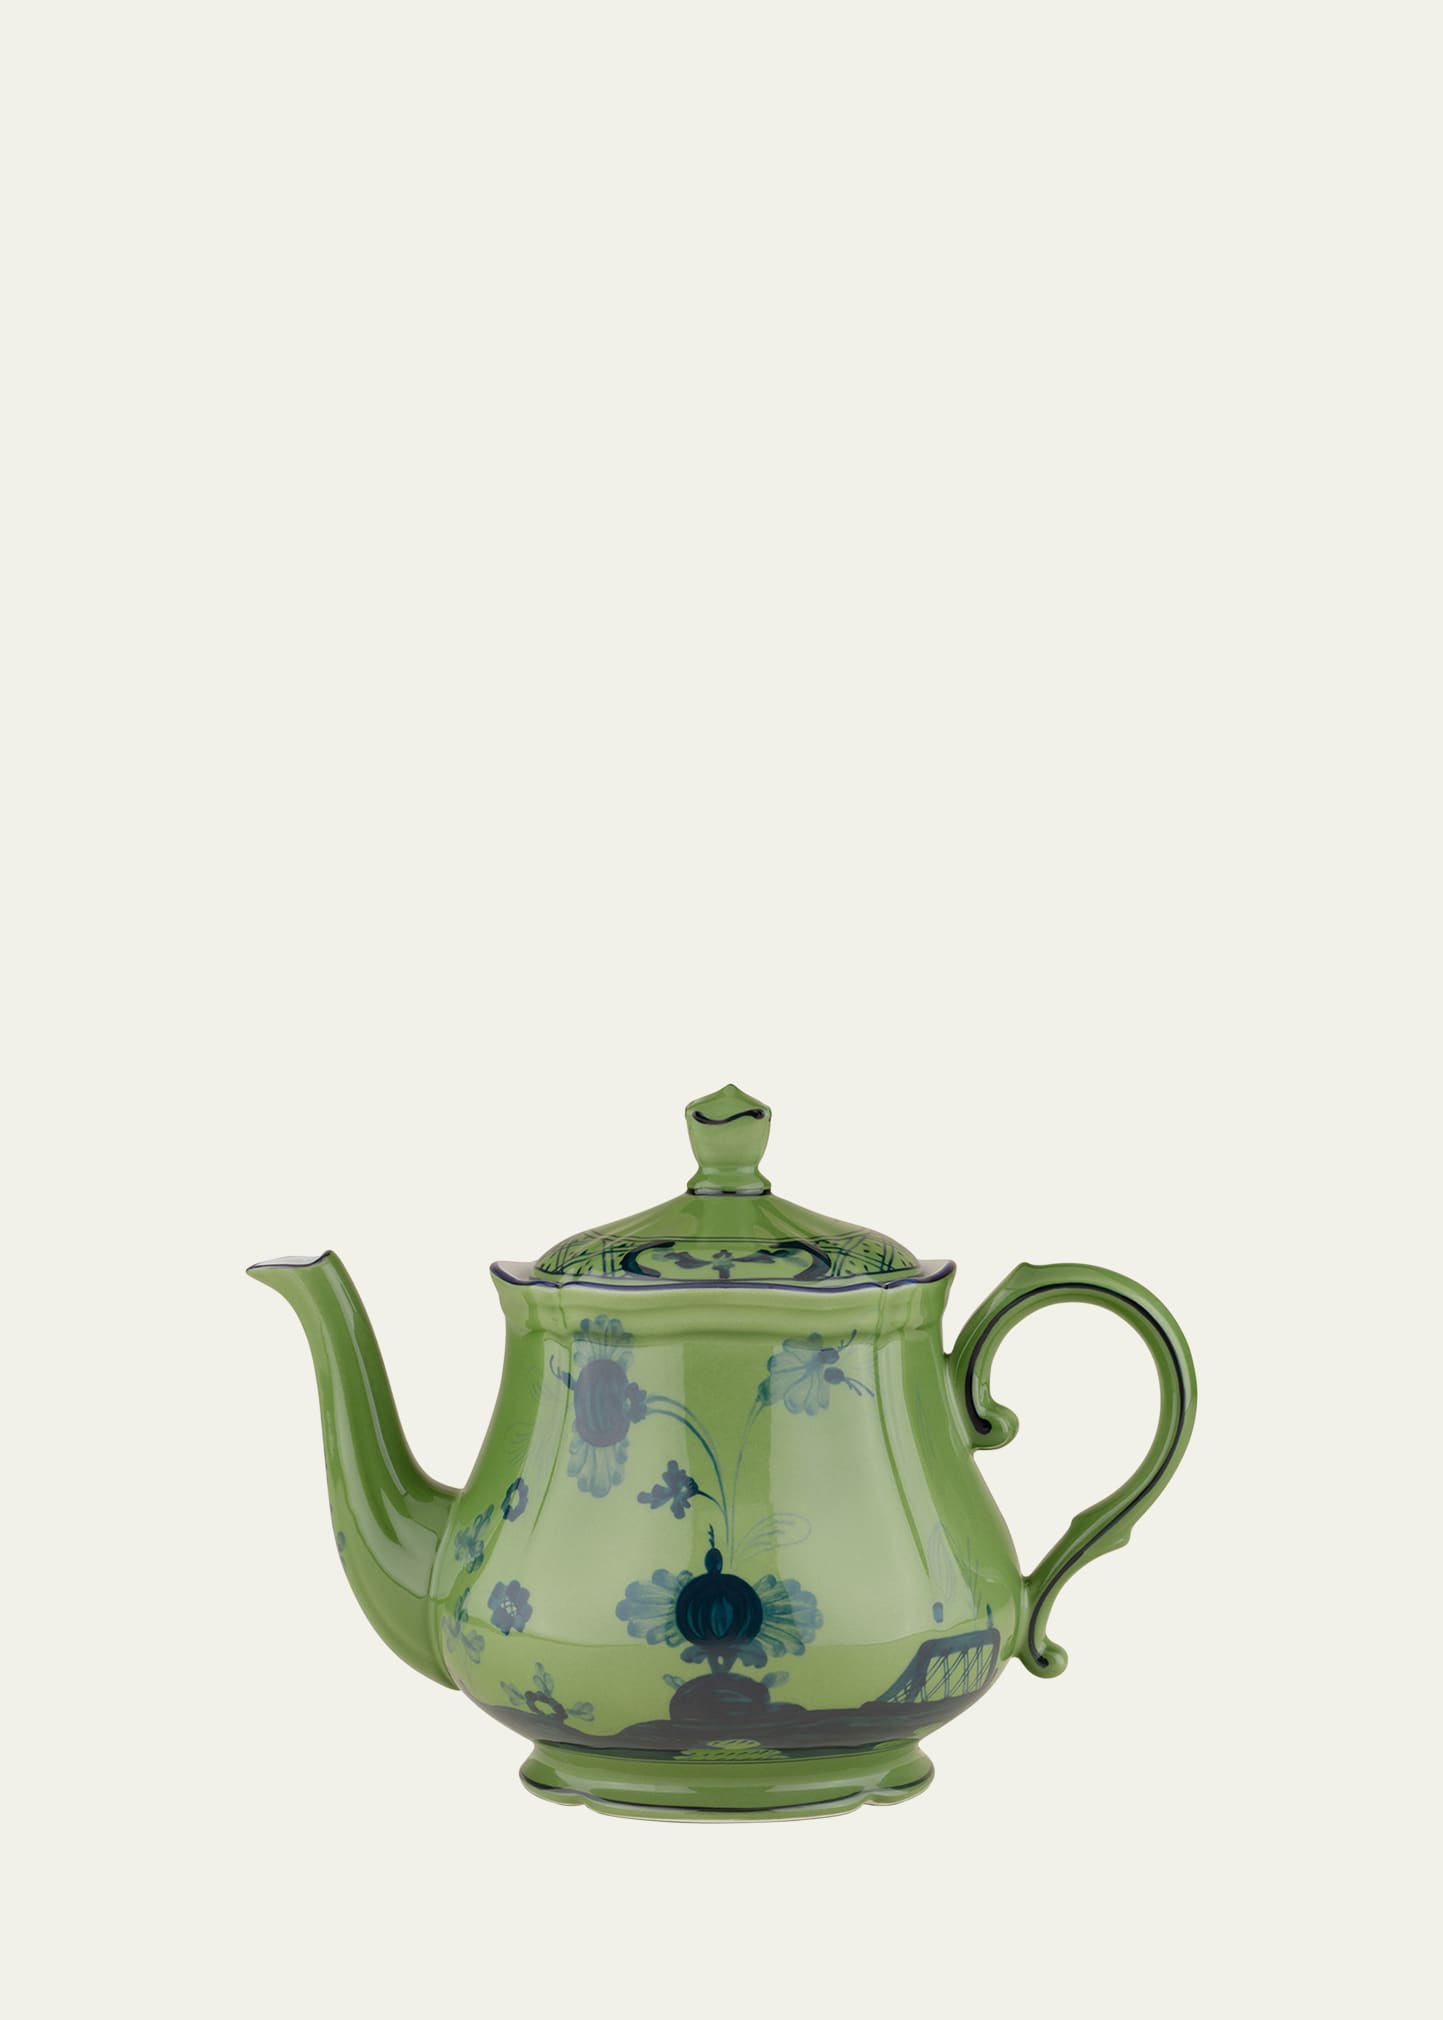 Oriente Italiano Teapot with Cover, 24 oz.